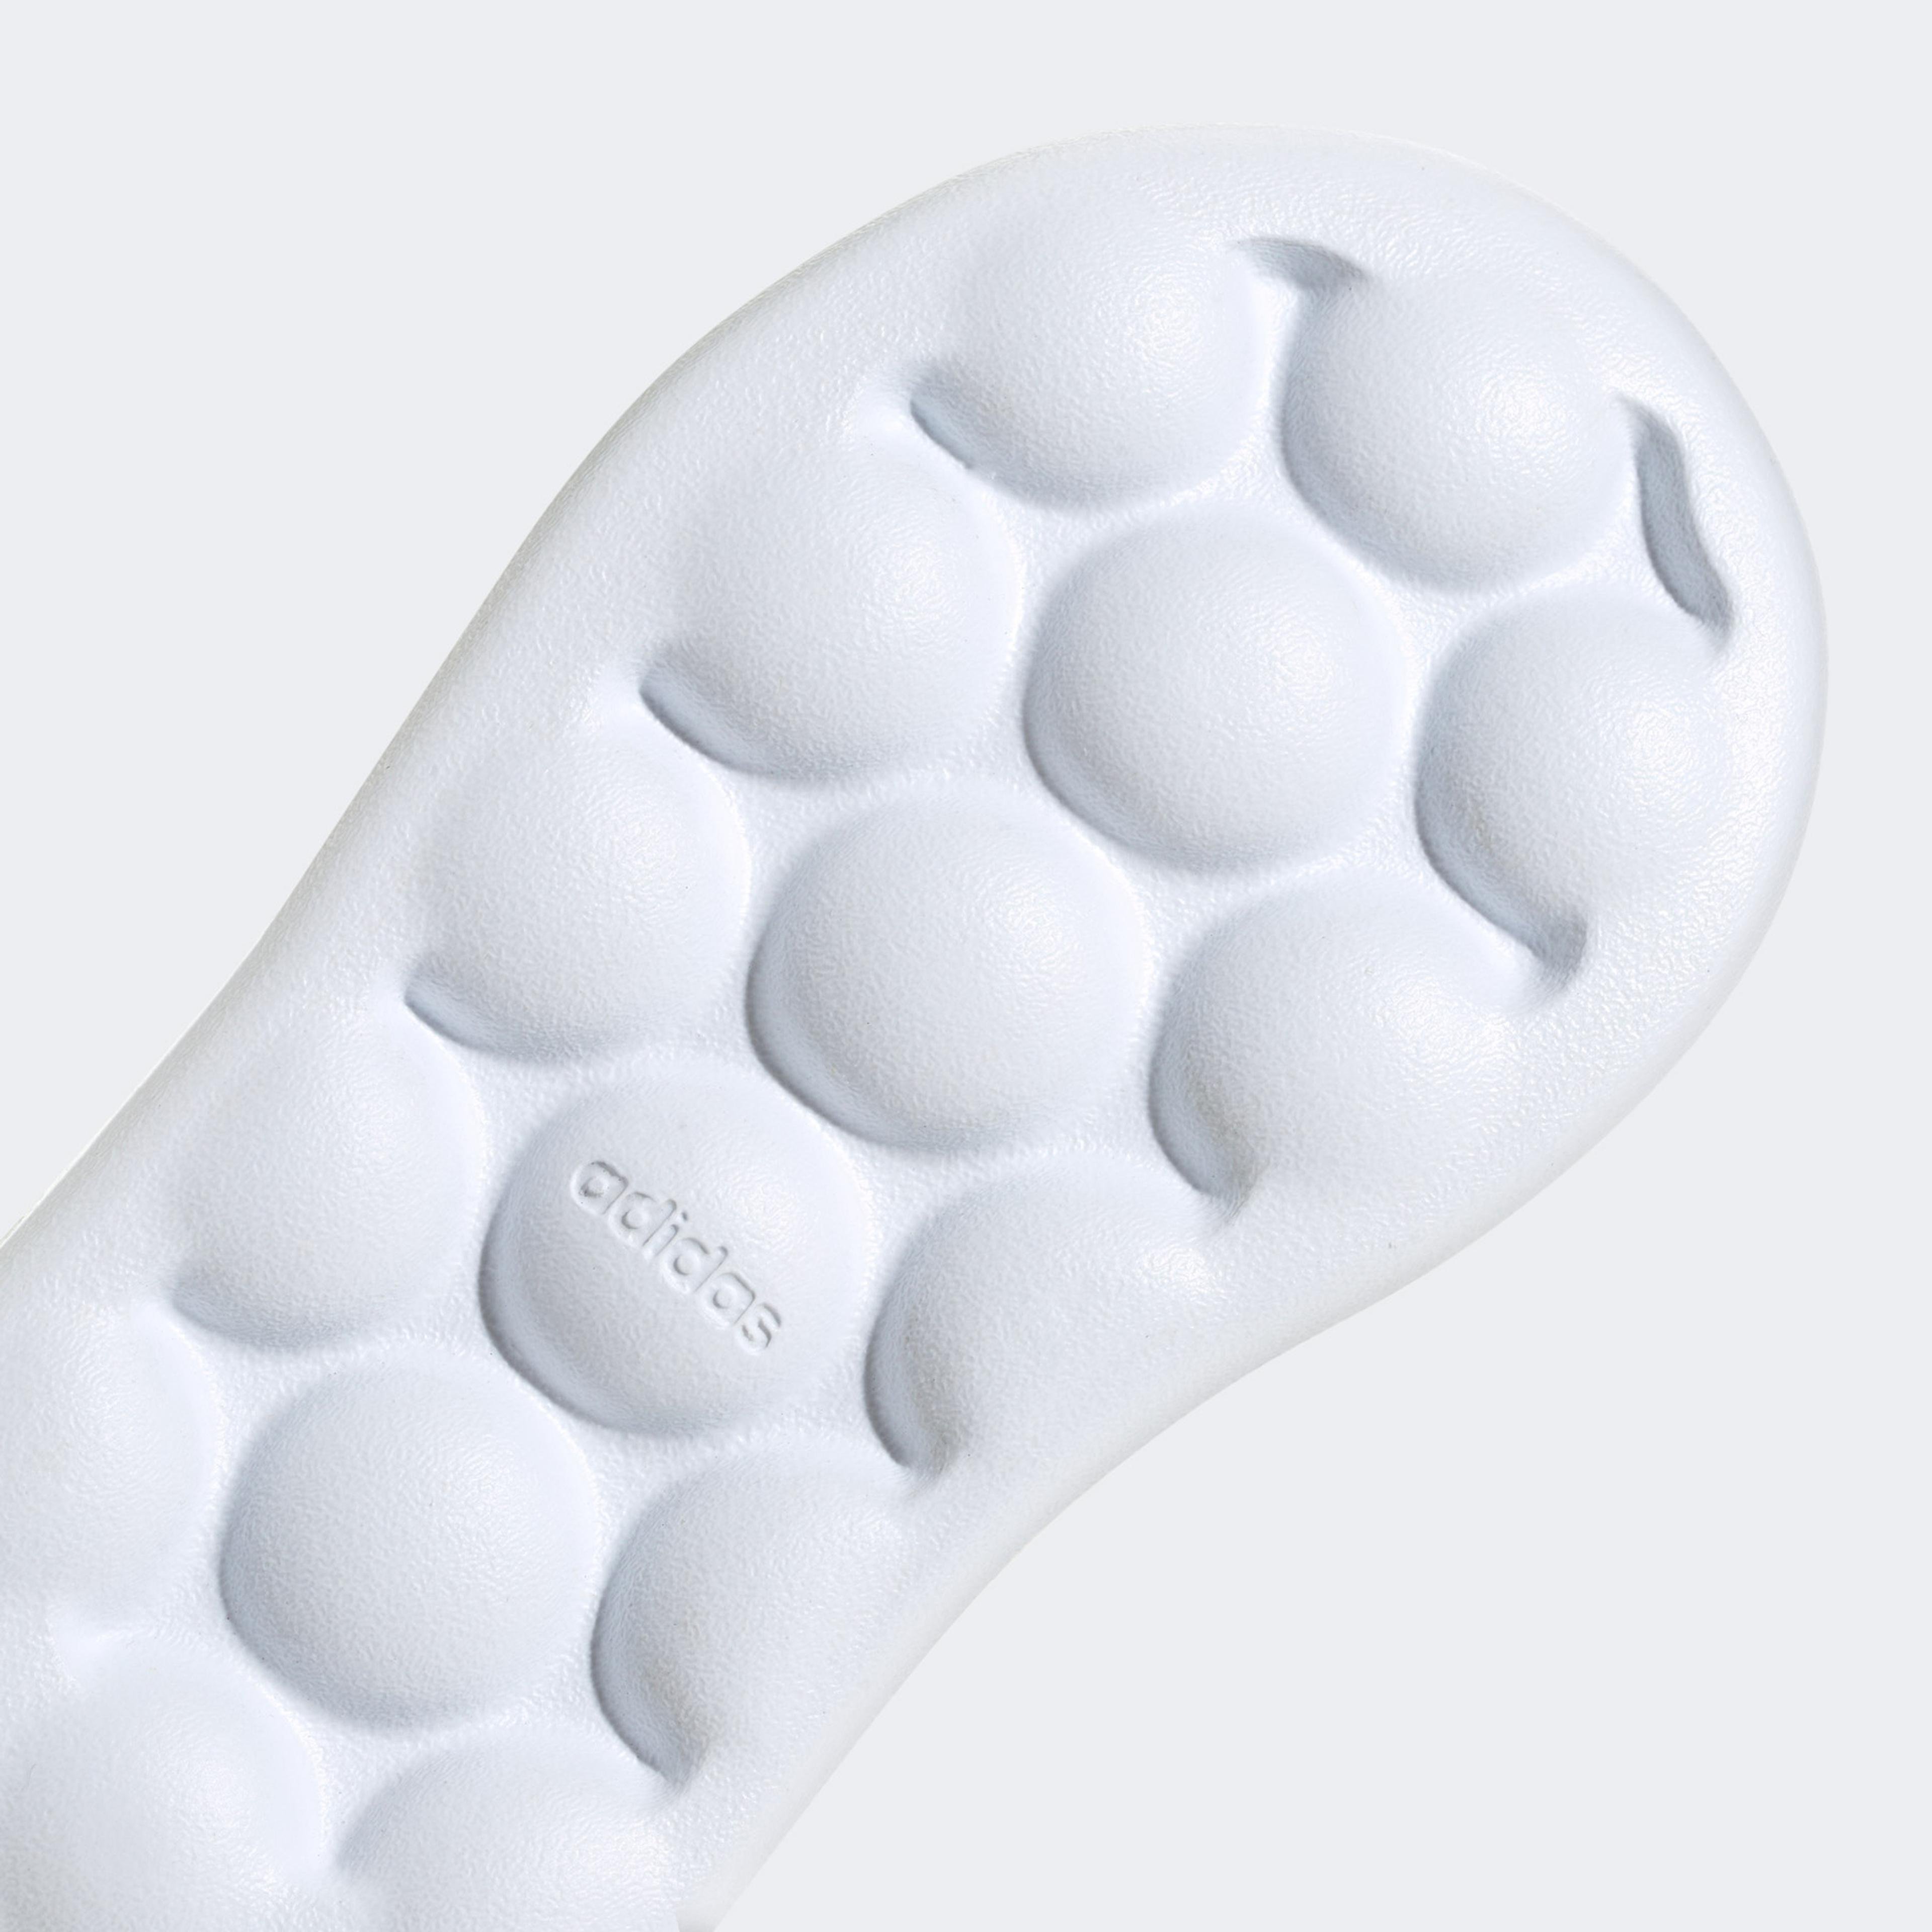 adidas Sportswear Advantage Cf Bebek Beyaz Spor Ayakkabı